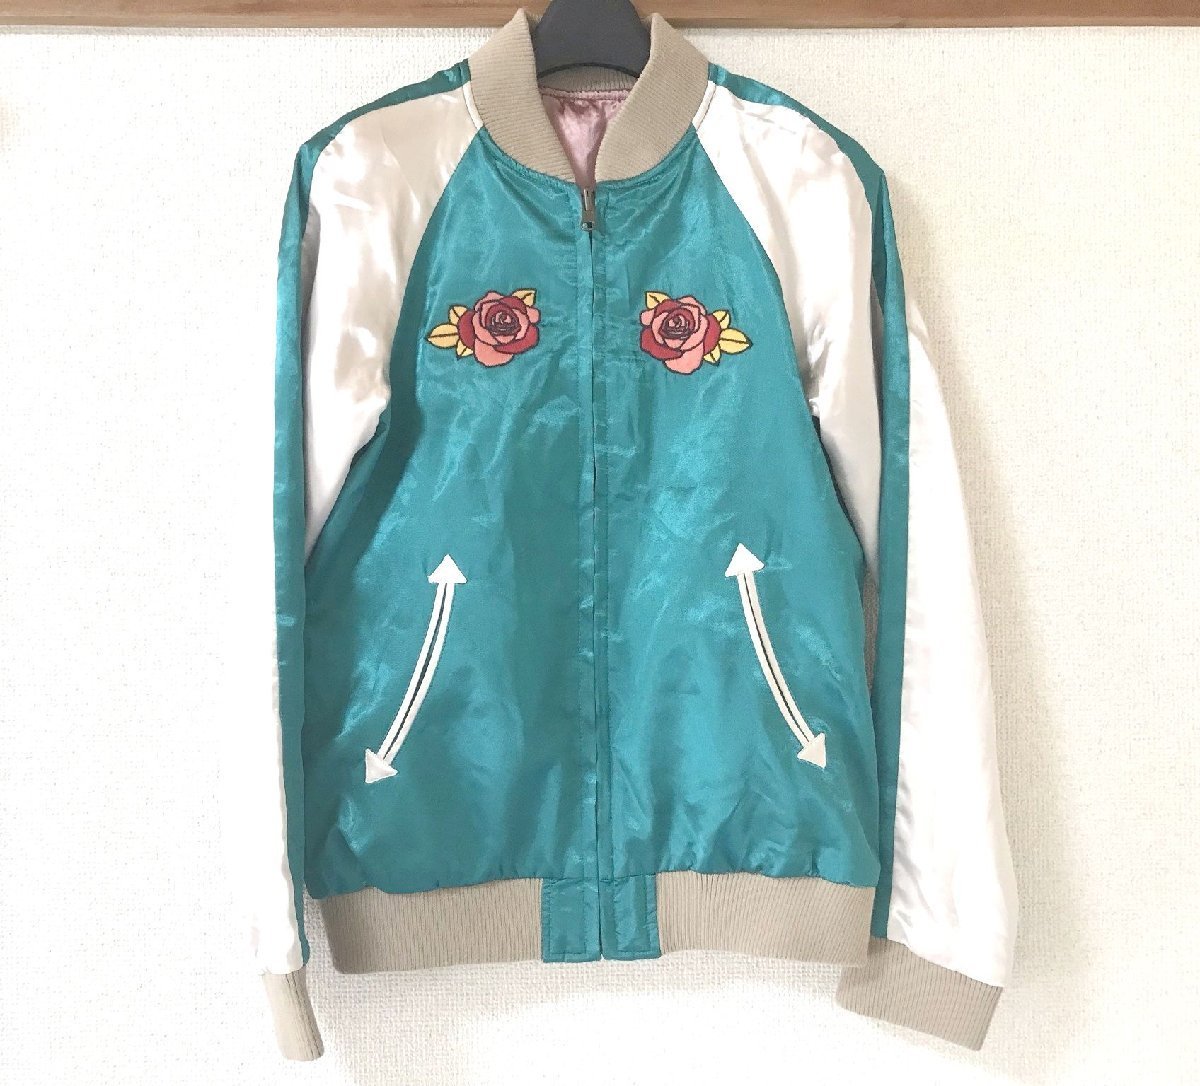 #[YS-1] Rodeo Crowns # двусторонний Japanese sovenir jacket # оттенок зеленого × оттенок белого розовый серия # размер 2 [ включение в покупку возможность товар ]#D